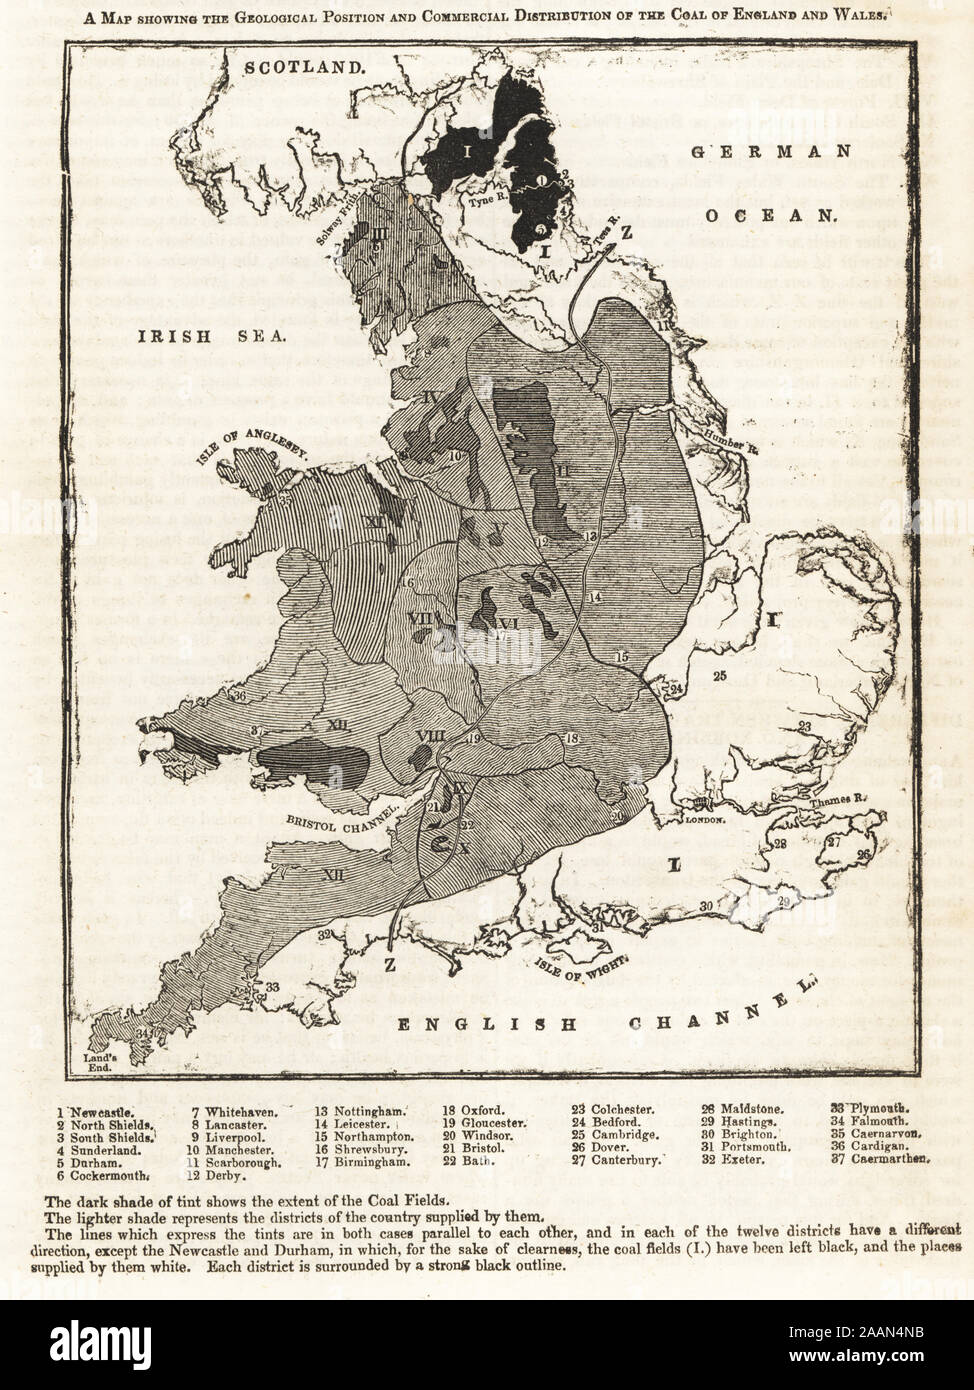 Mapa mostrando la posición geológica y la distribución comercial del carbón de Inglaterra y Gales. Grabado de la xilografía Penny Magazine, de la Sociedad para la difusión de conocimientos útiles, impreso por William Clowes, Lambeth, 1833. Foto de stock